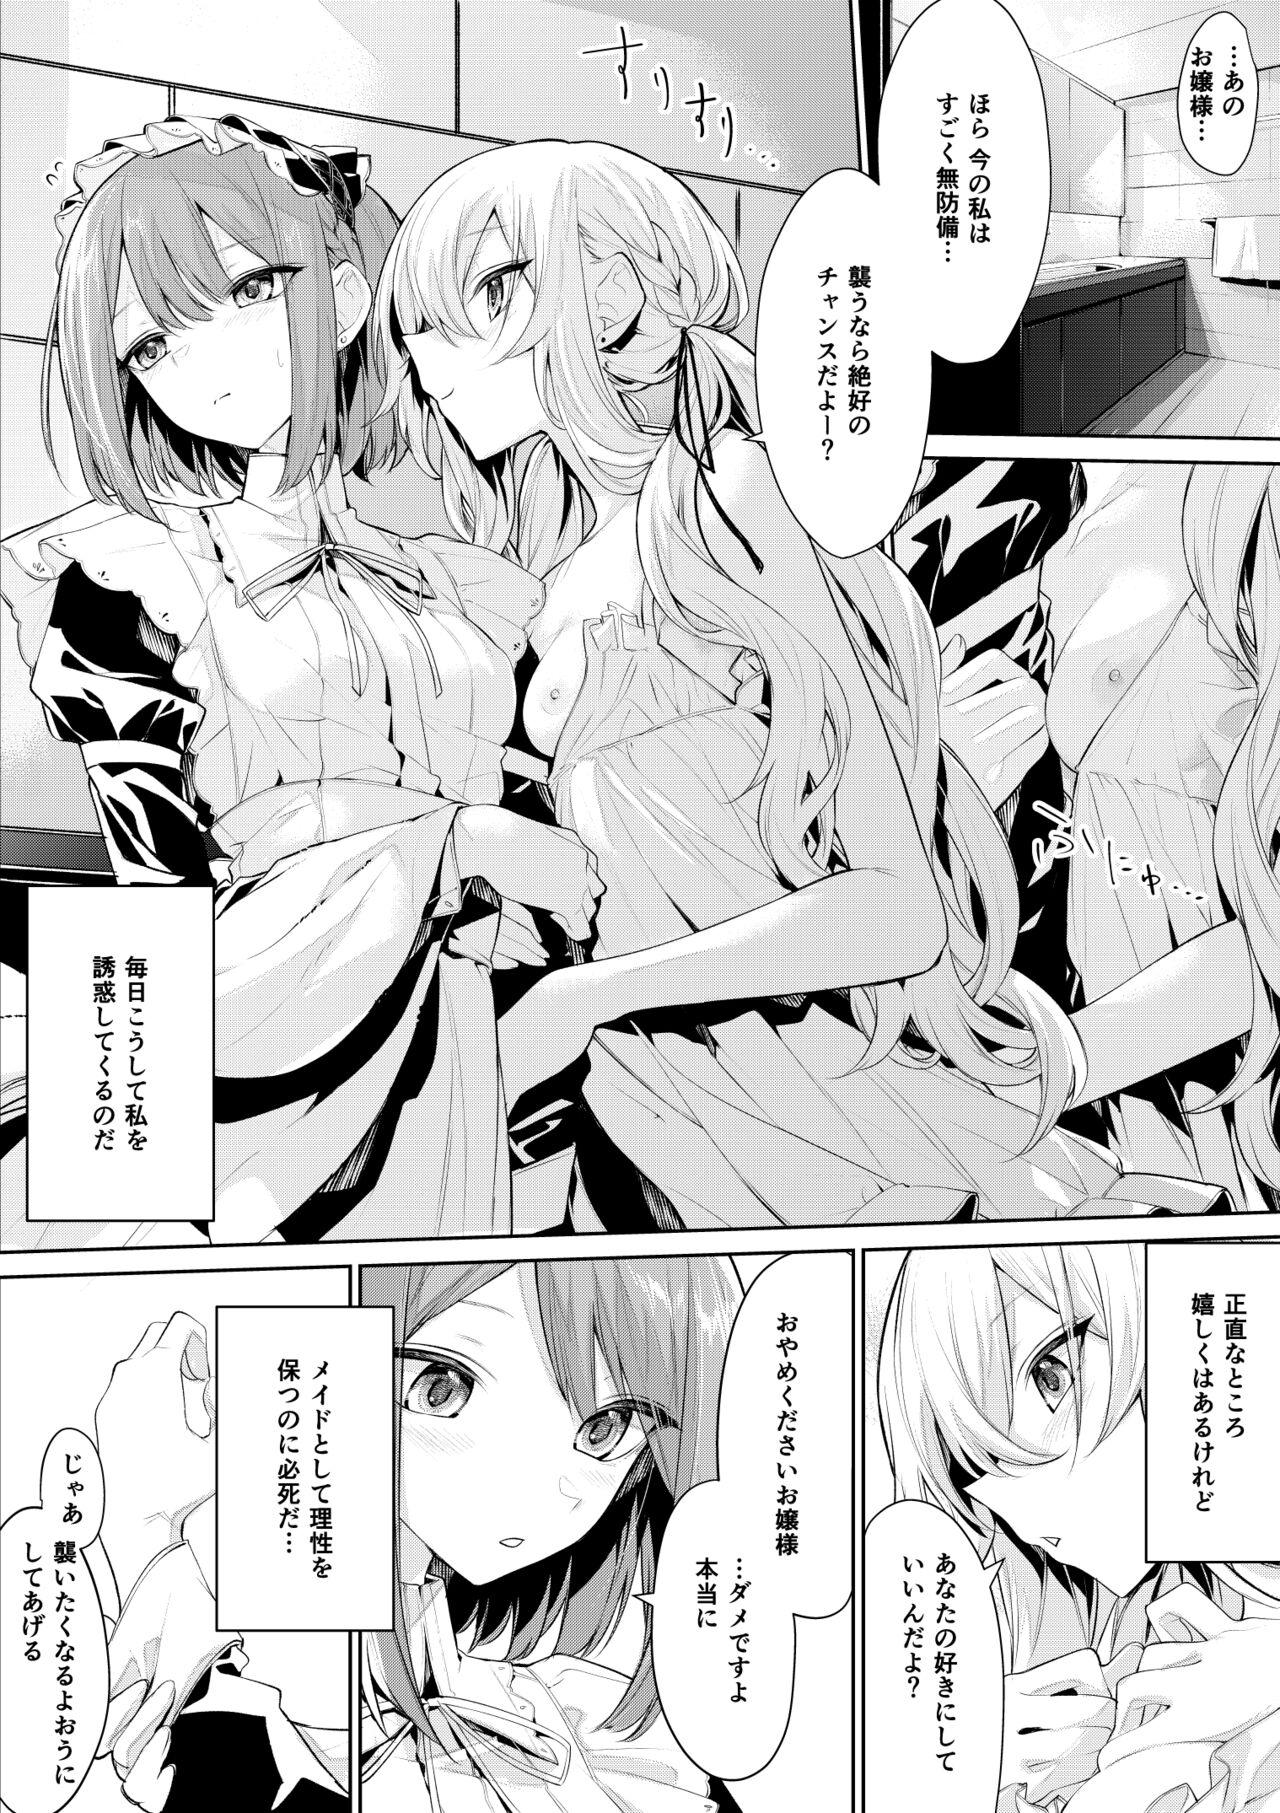 Bunduda [Zanka] Maid-san ni Doushitemo Osowaretai Ojou-sama to, Yuuwaku ni Katenai Maid-san Lesbians - Picture 2